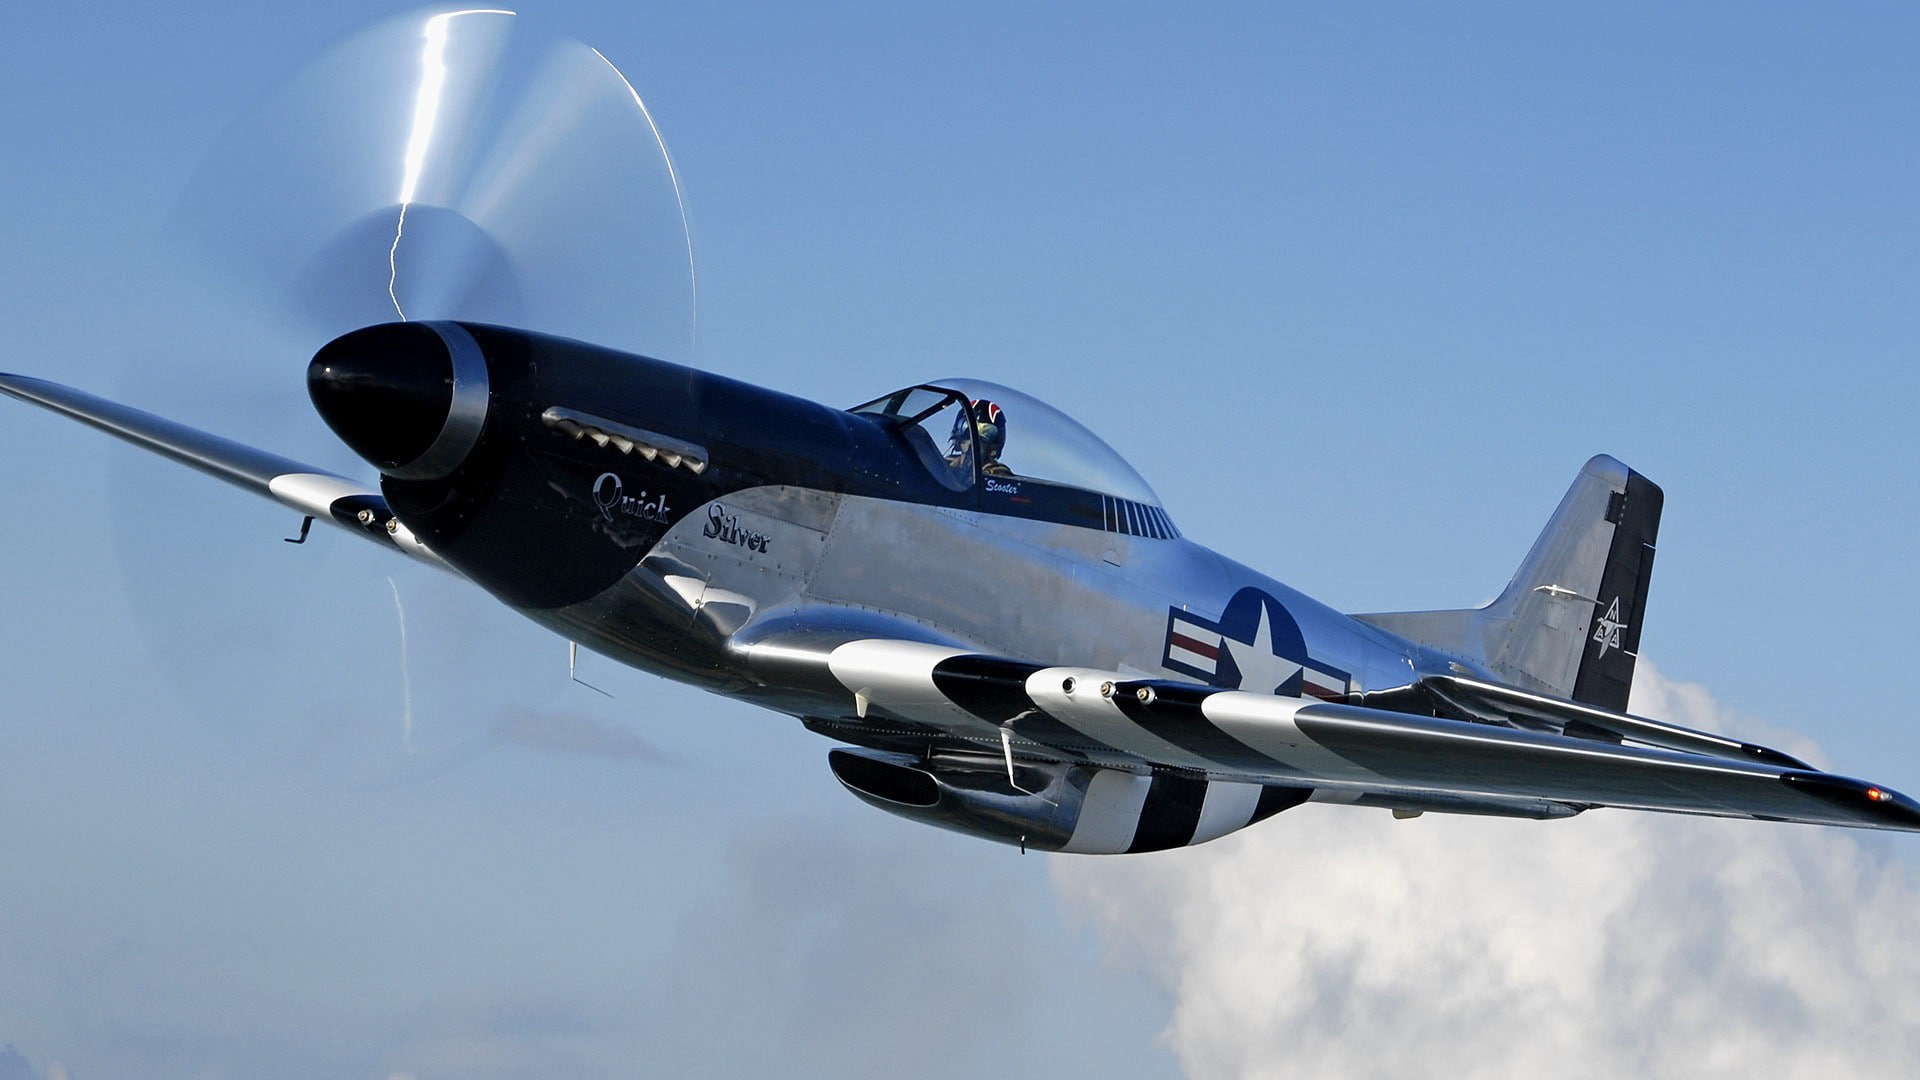 North American P-51 Mustang, World War II, aircraft, air vehicle